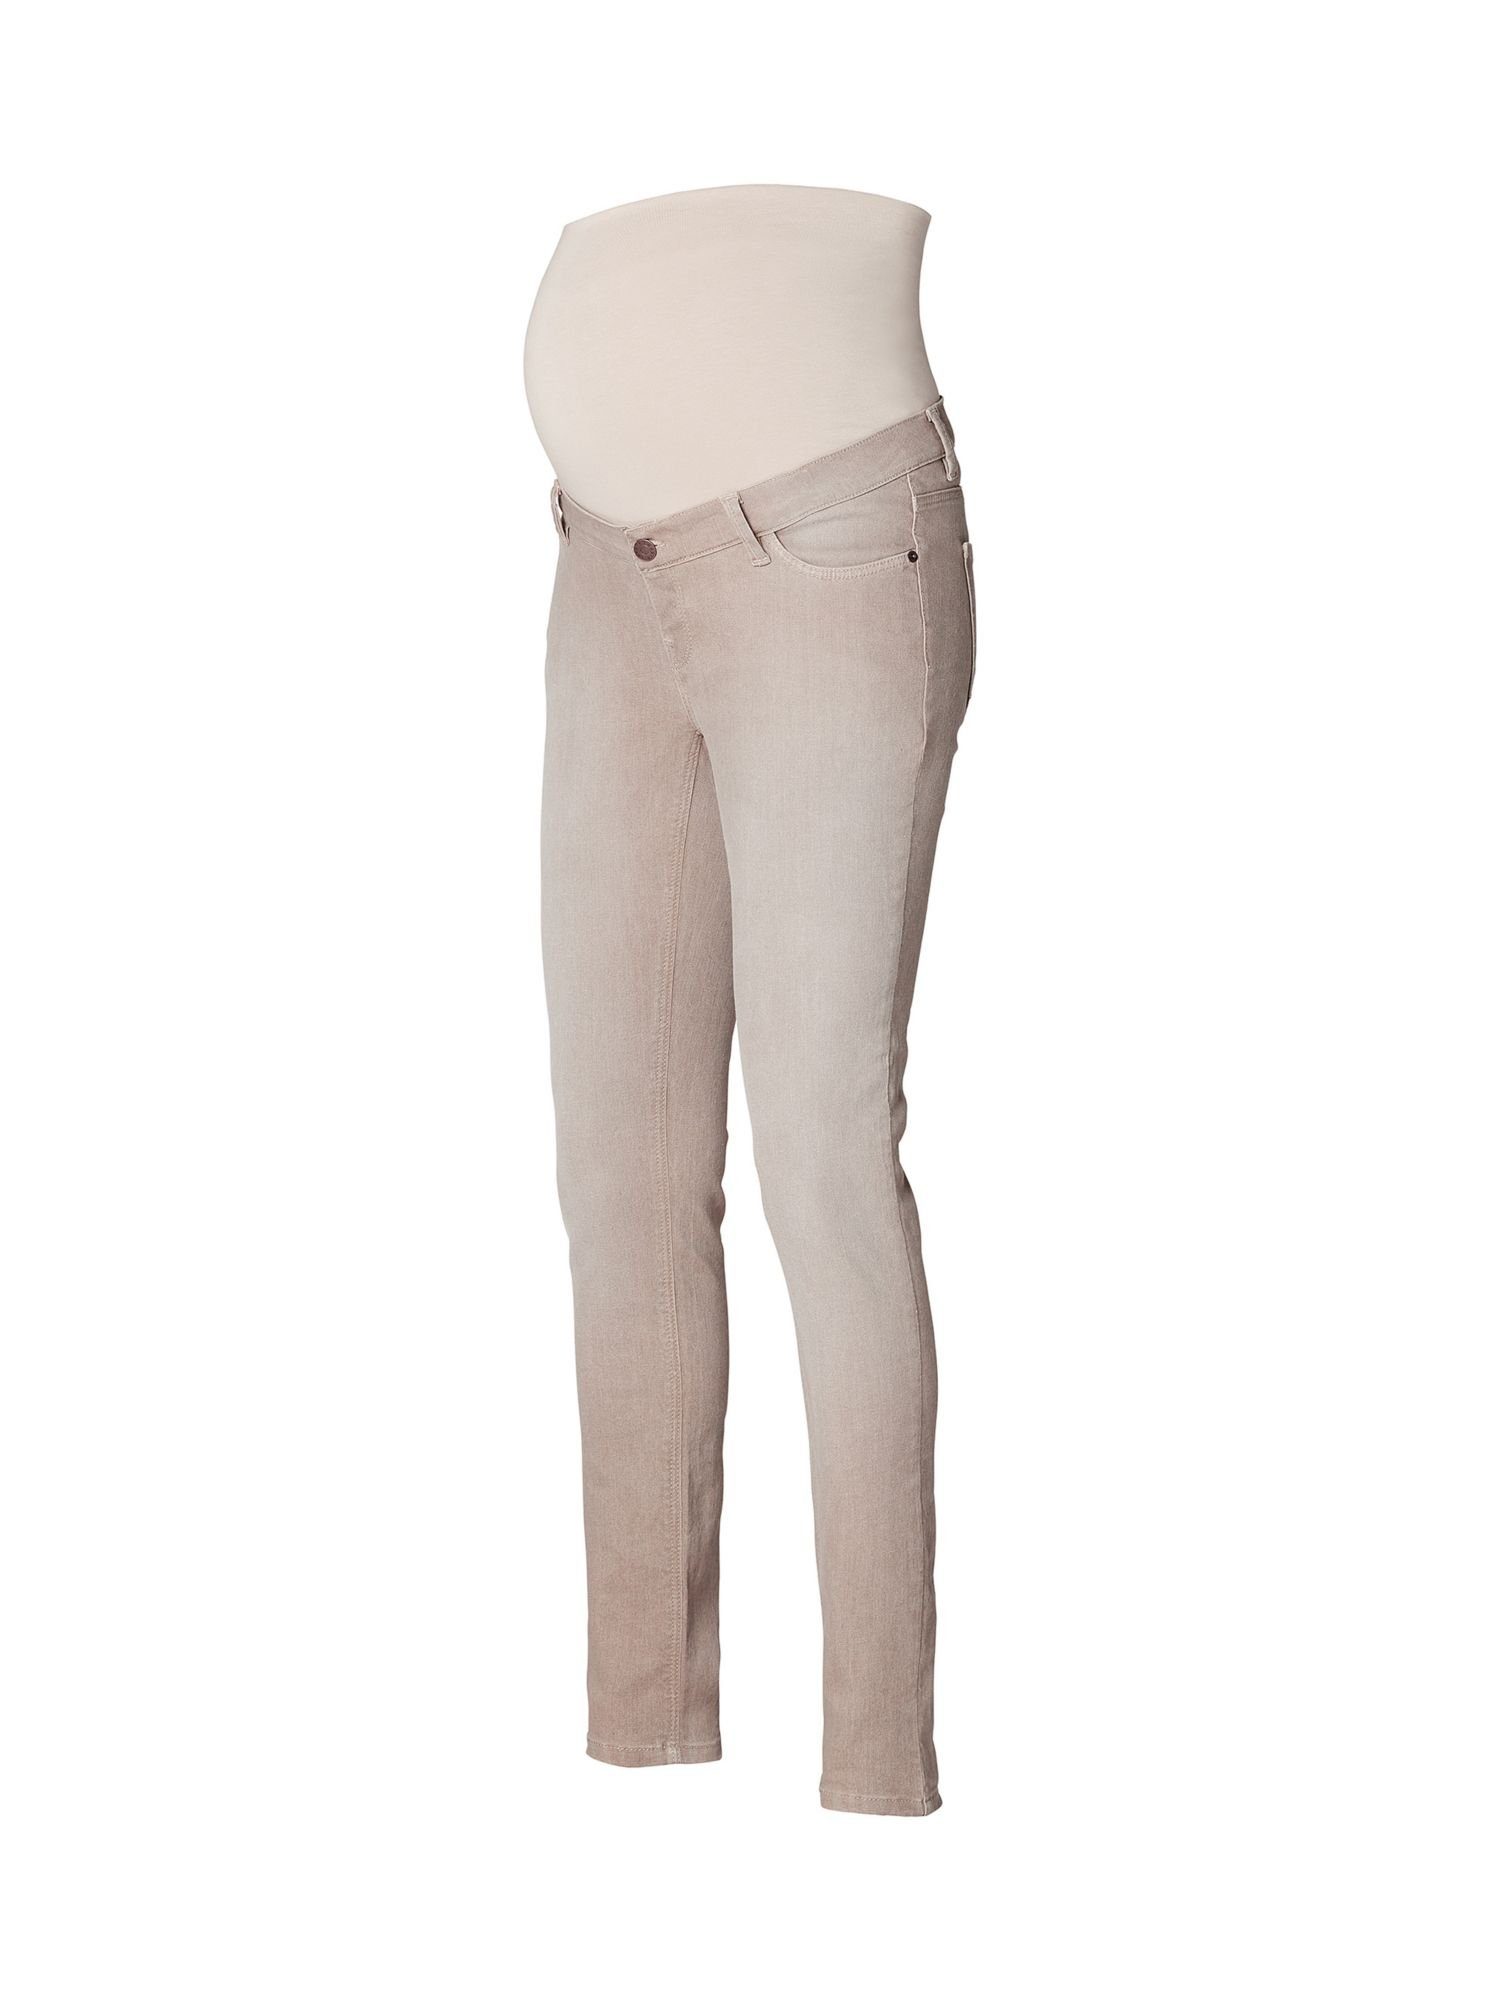 Damen Umstandsmode ESPRIT maternity Umstandsjeans Stretch-Jeans mit Überbauchbund, Bio-Baumwolle